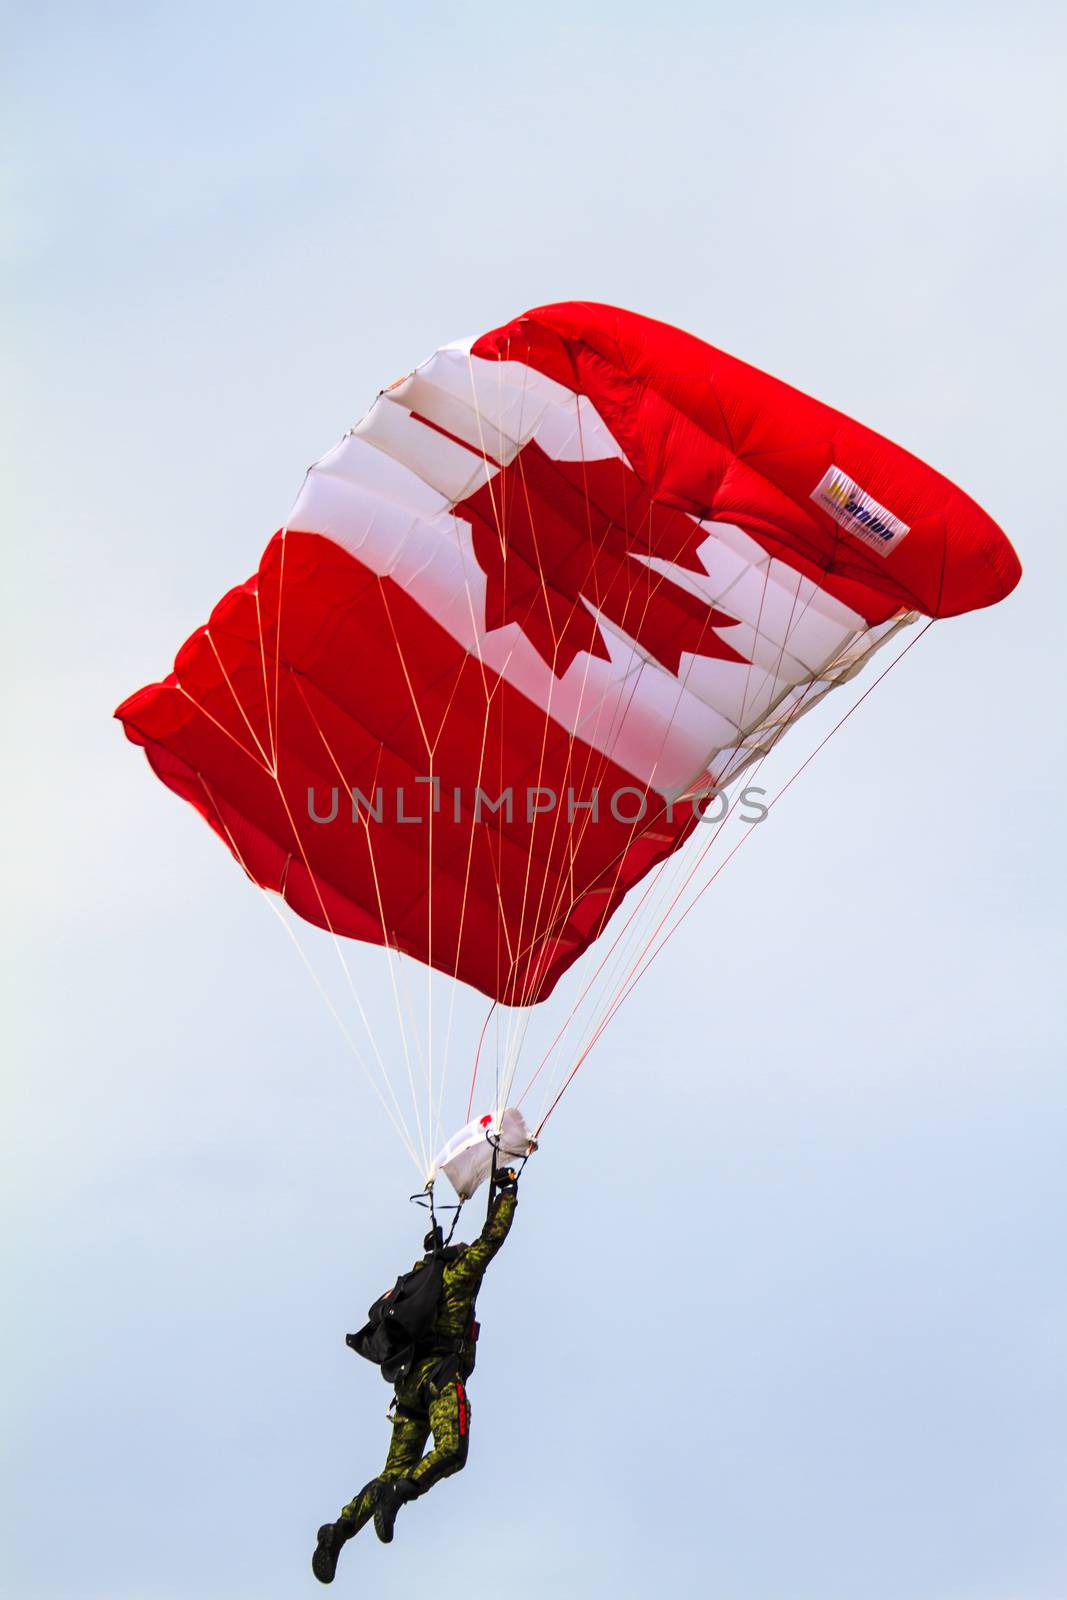 Air Show  at Springbank  Canada by Imagecom